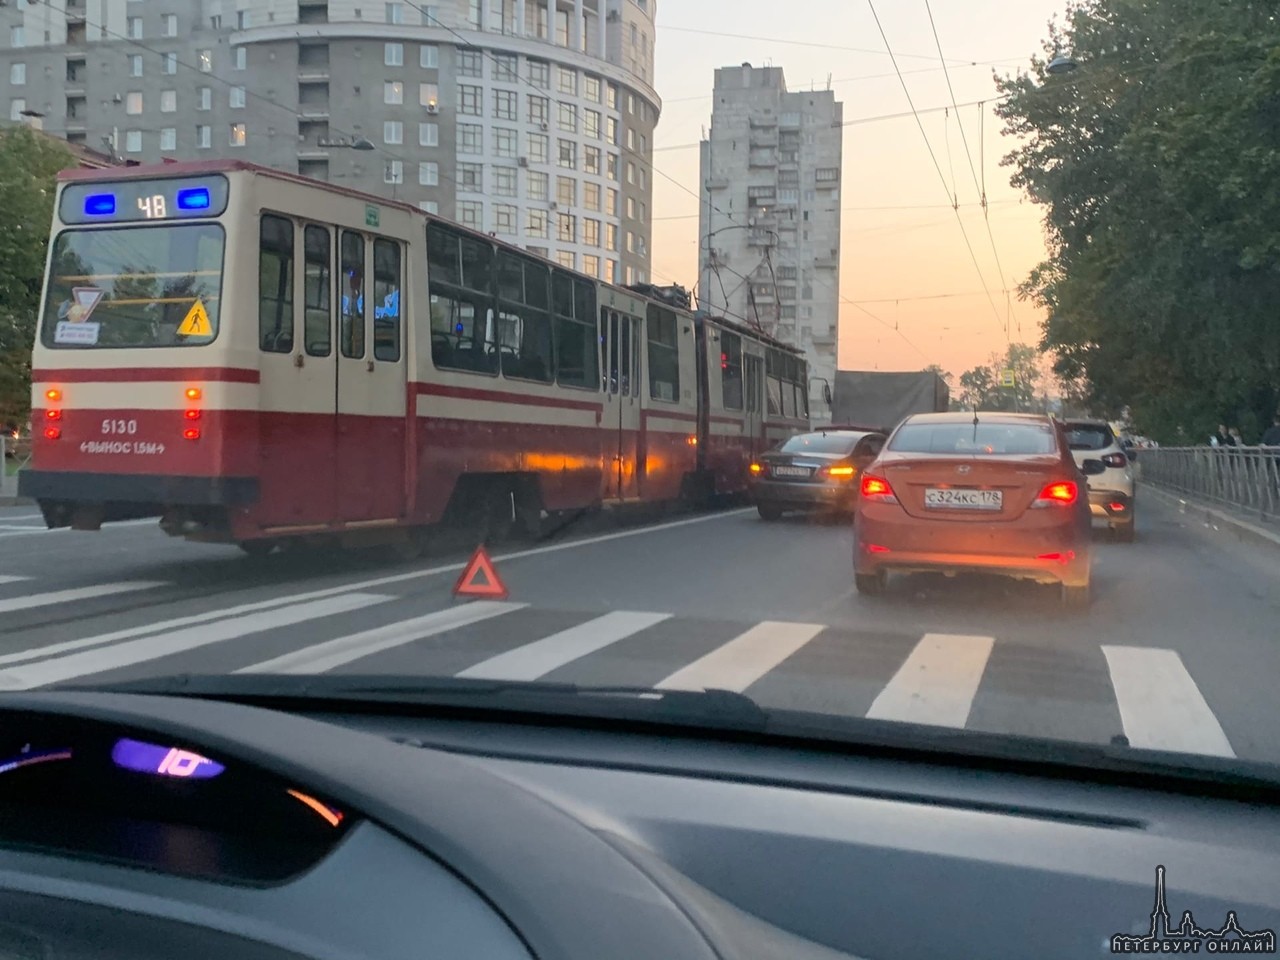 На Торжковской улице 2 паровозик из Мерседеса, Ниссана и Газели. Трамваи стоят